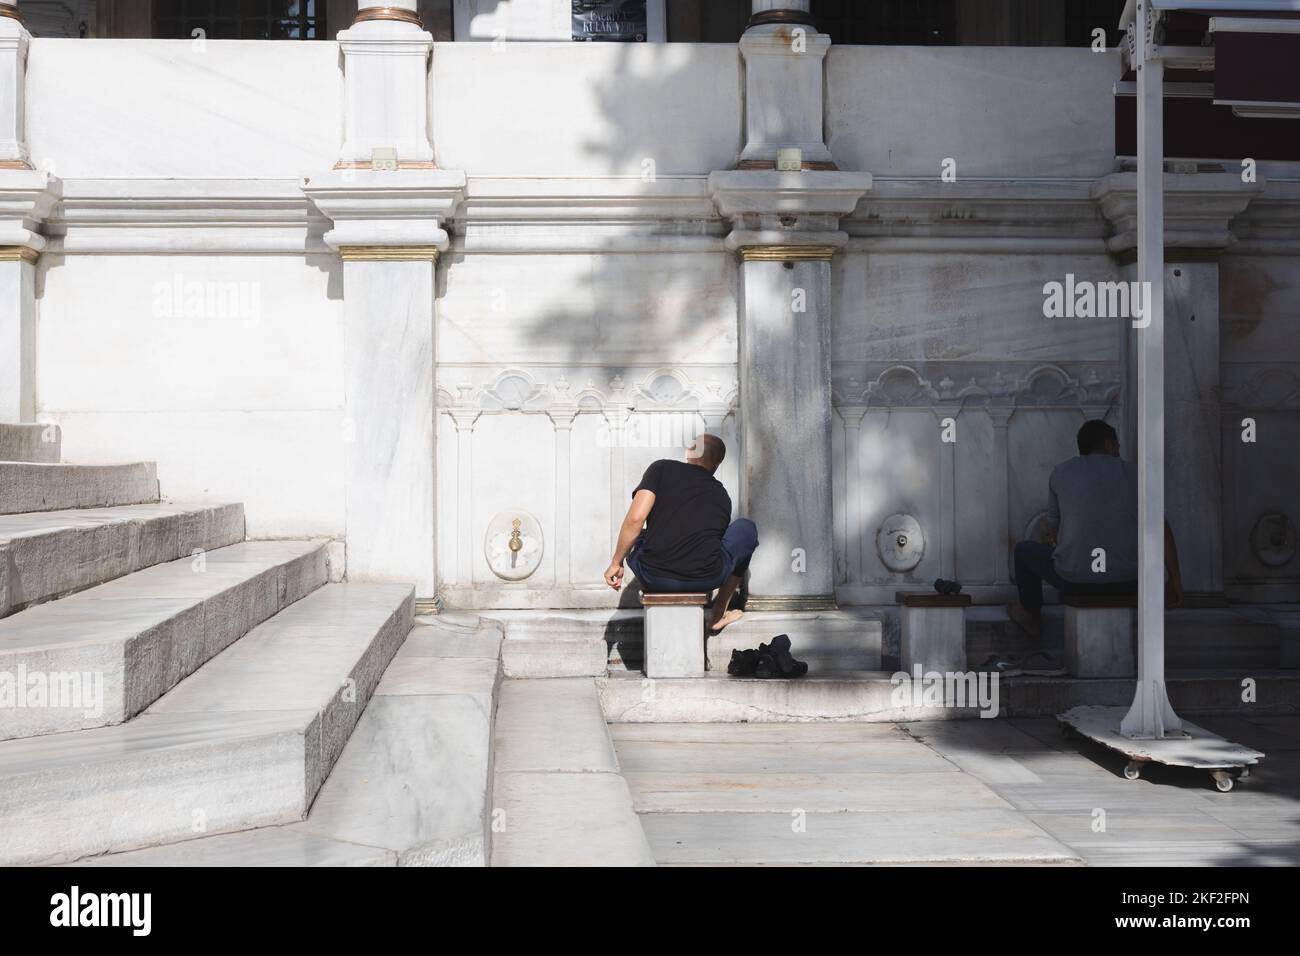 Istanbul, Turchia - 1 2022 ottobre: Devoti adoratori musulmani lavarsi i piedi prima della preghiera, un rituale di purificazione chiamato Wudu, fuori da una moschea dentro Foto Stock